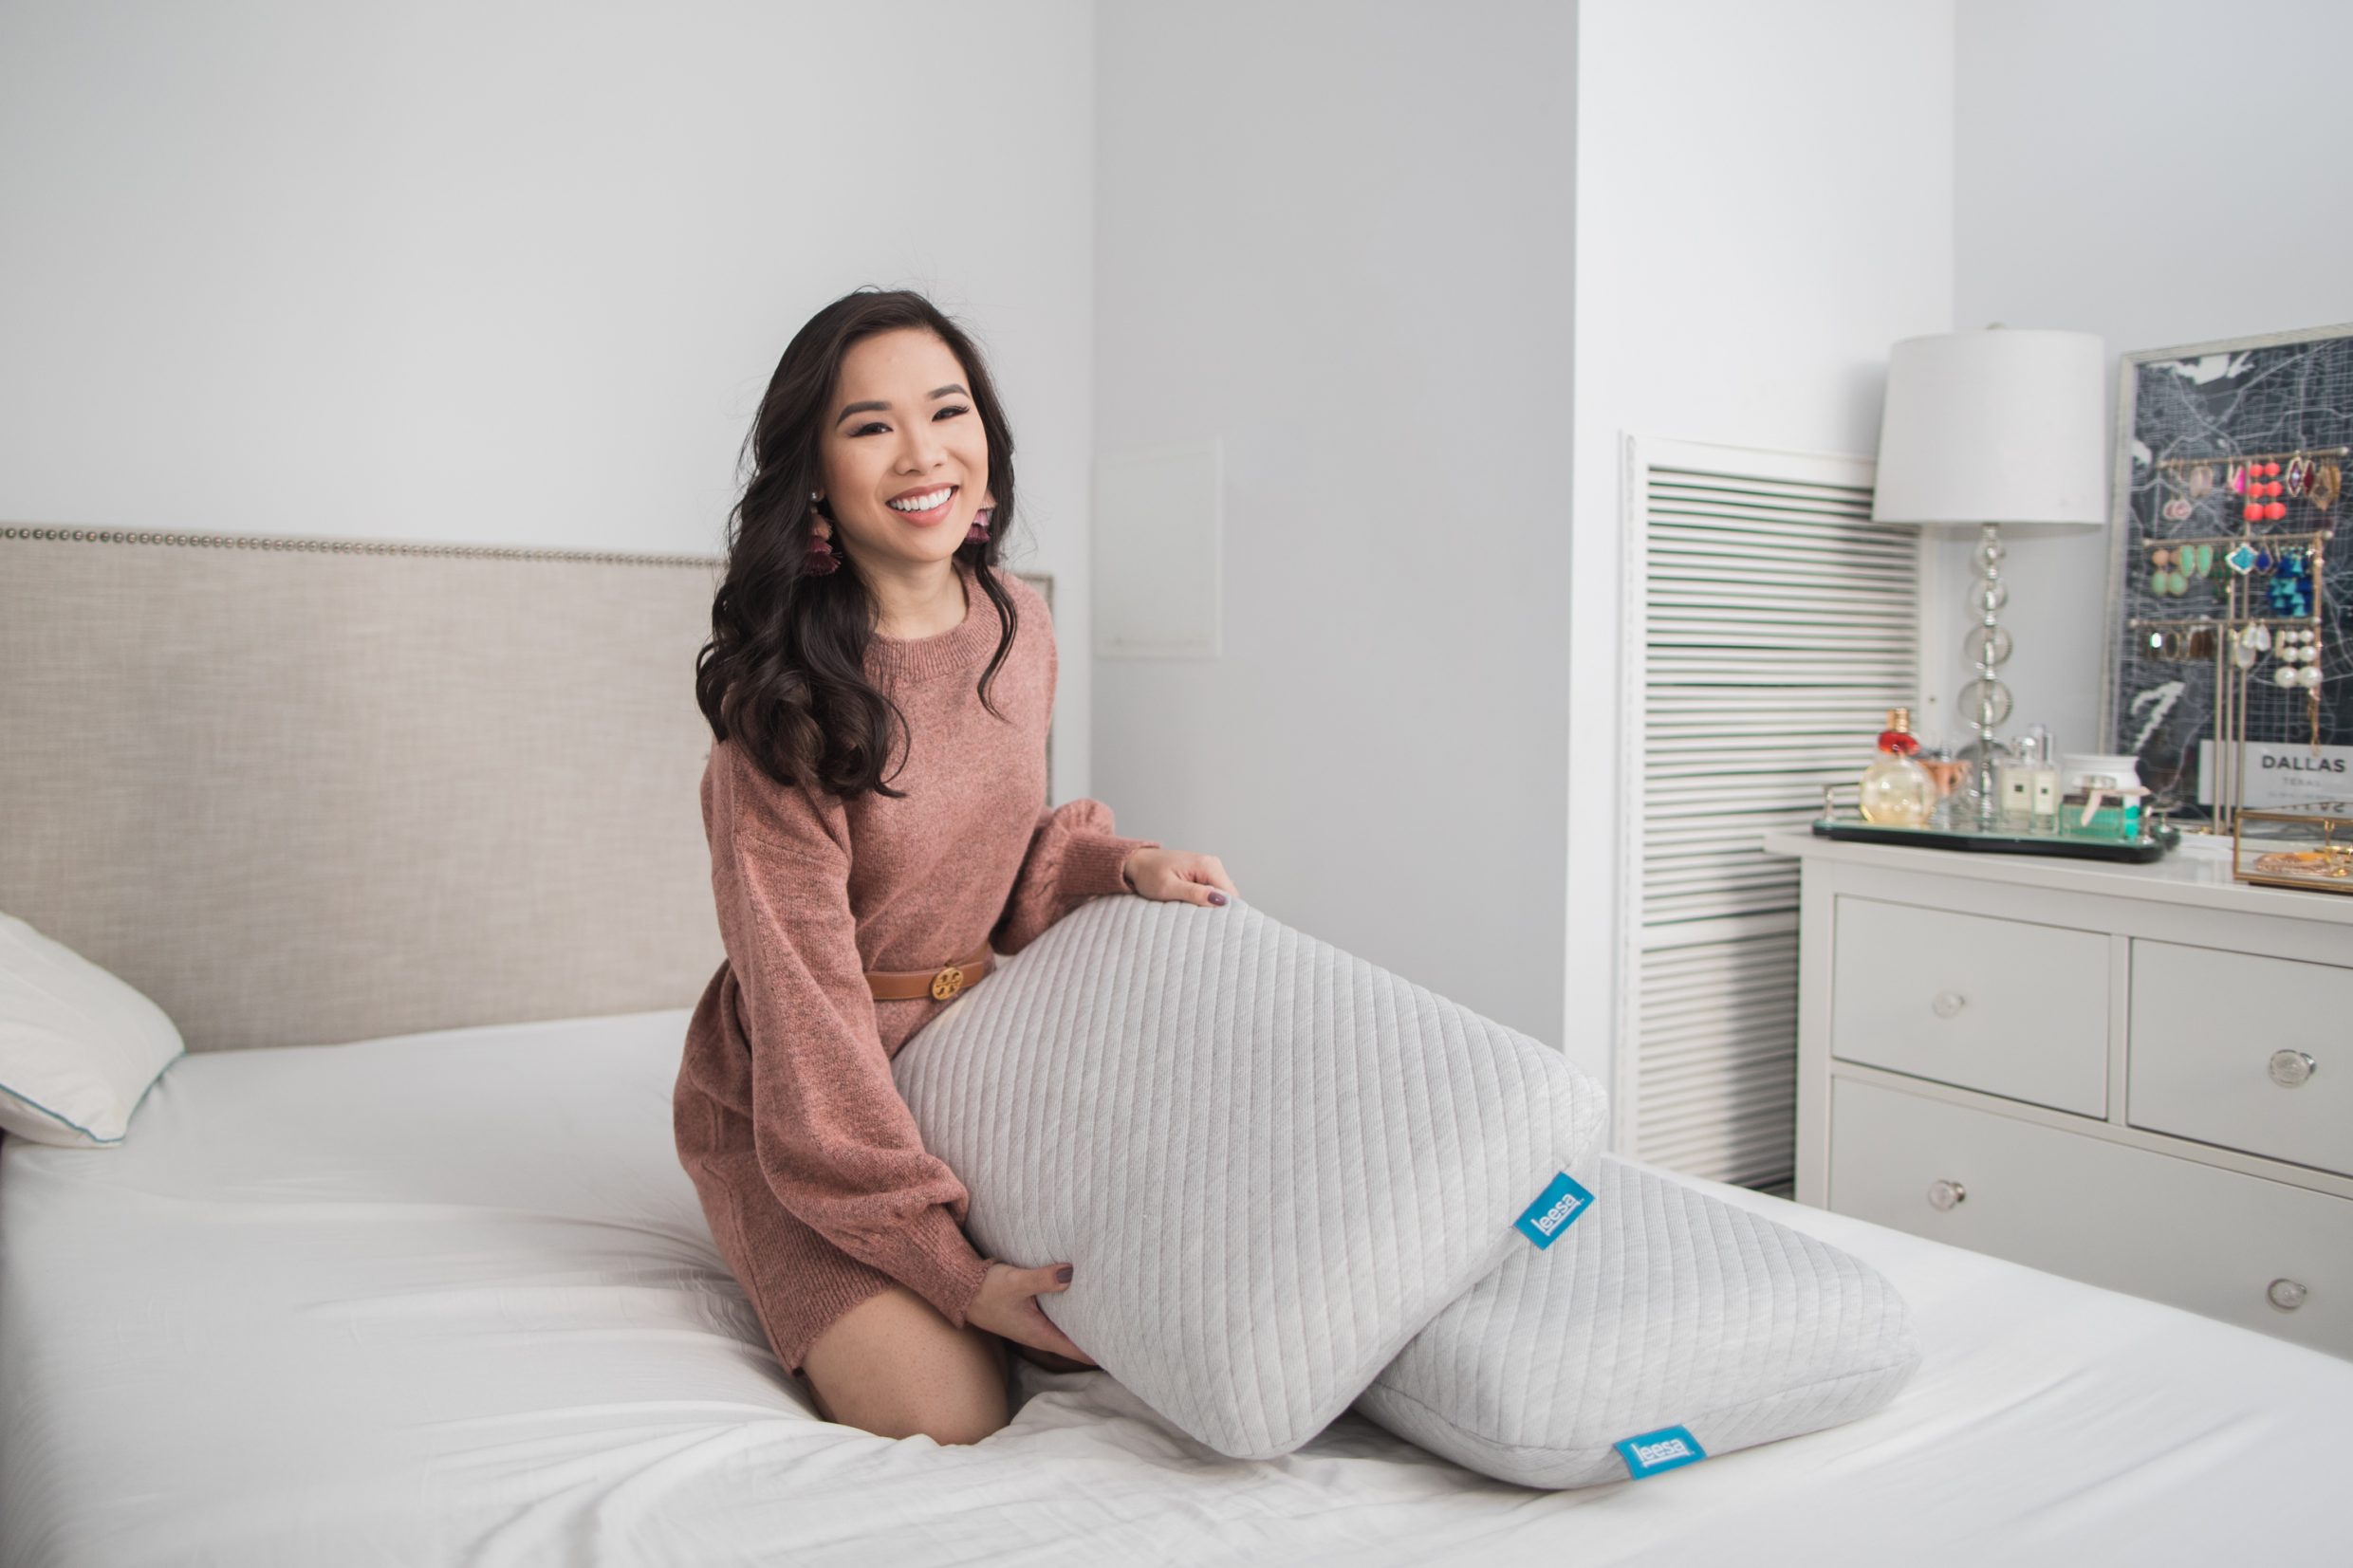 Leesa mattress and pillows